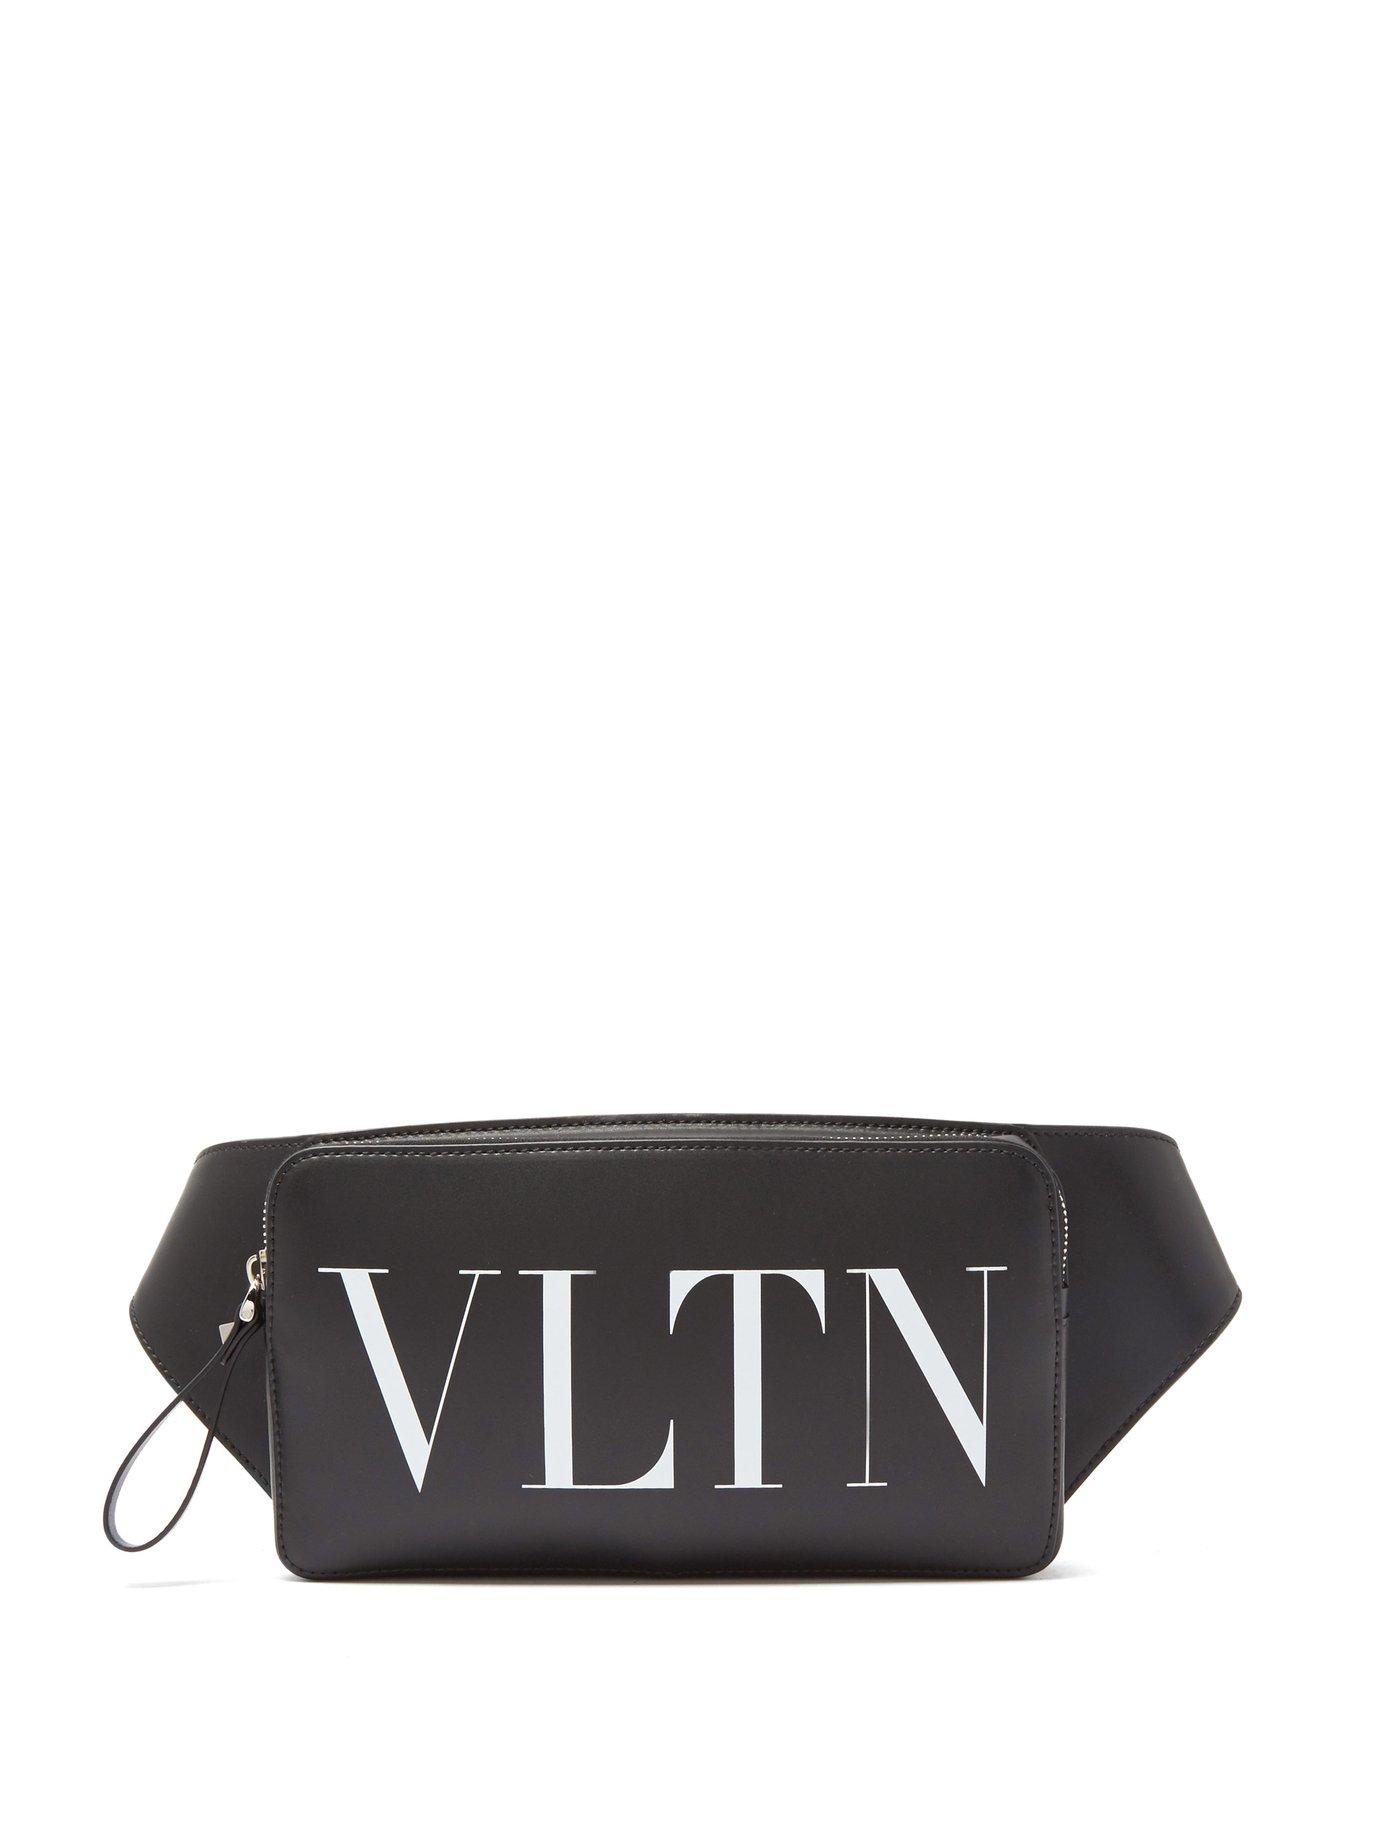 Valentino Vltn Leather Cross Body Bag in Black for Men - Lyst